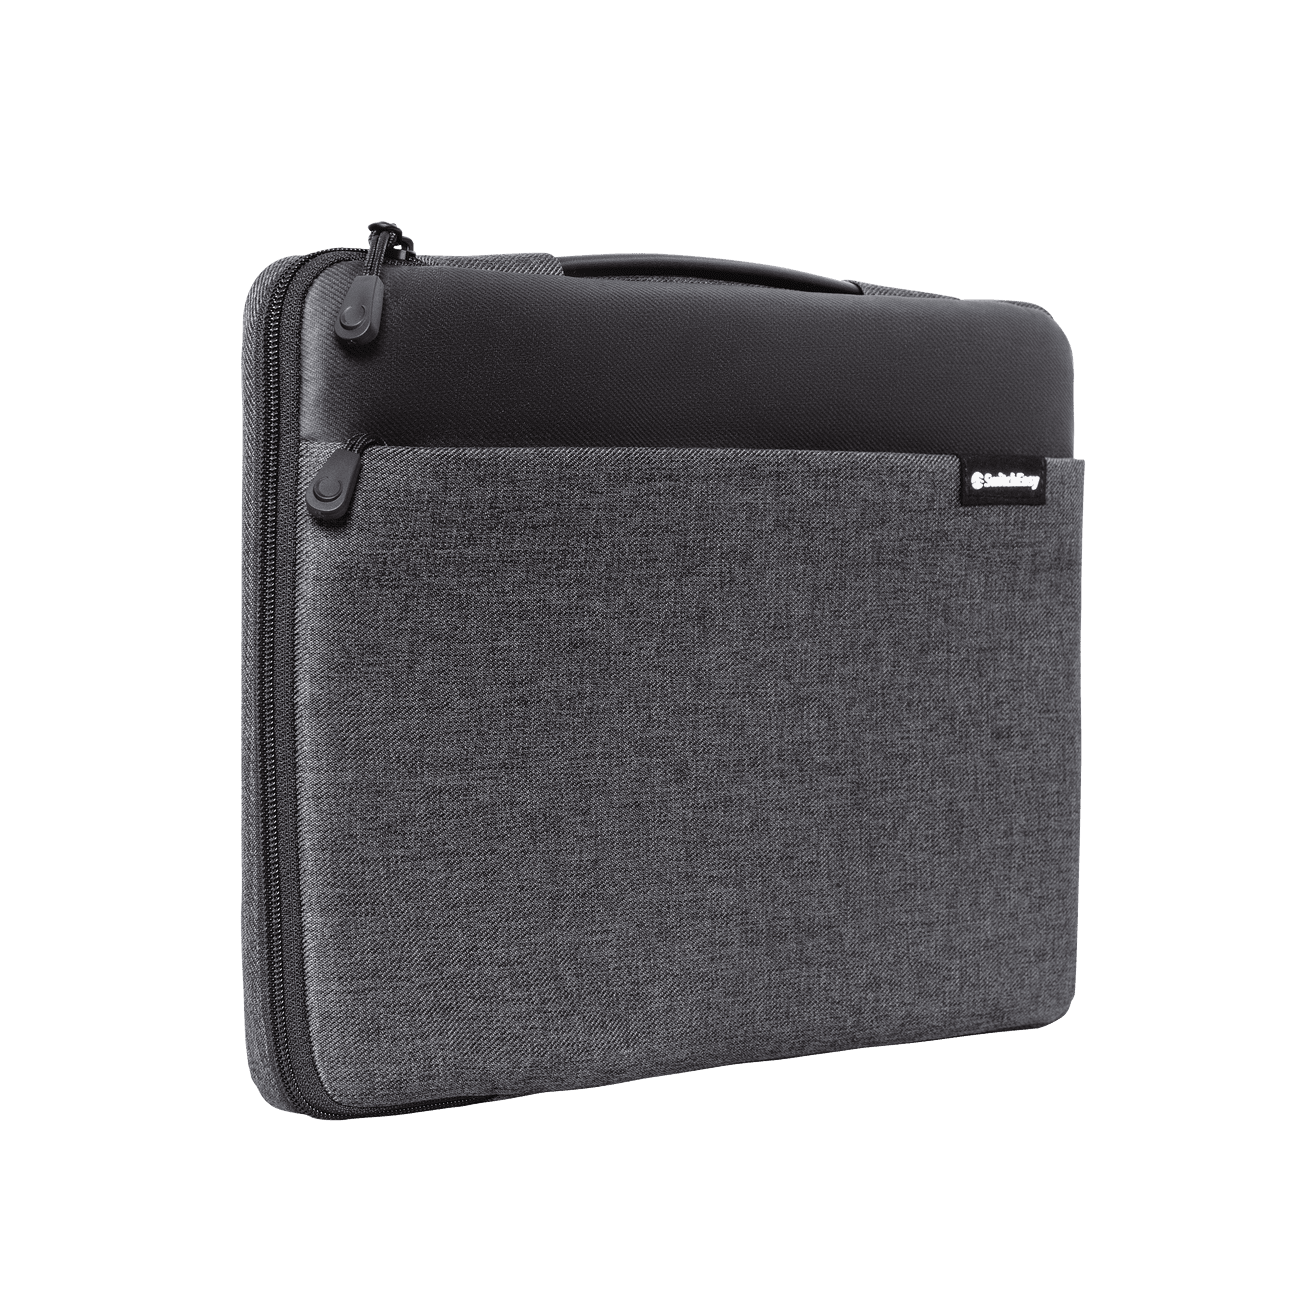 Estuche switcheasy urban pouch macbook 2021 pro 15“ / 16 color negro